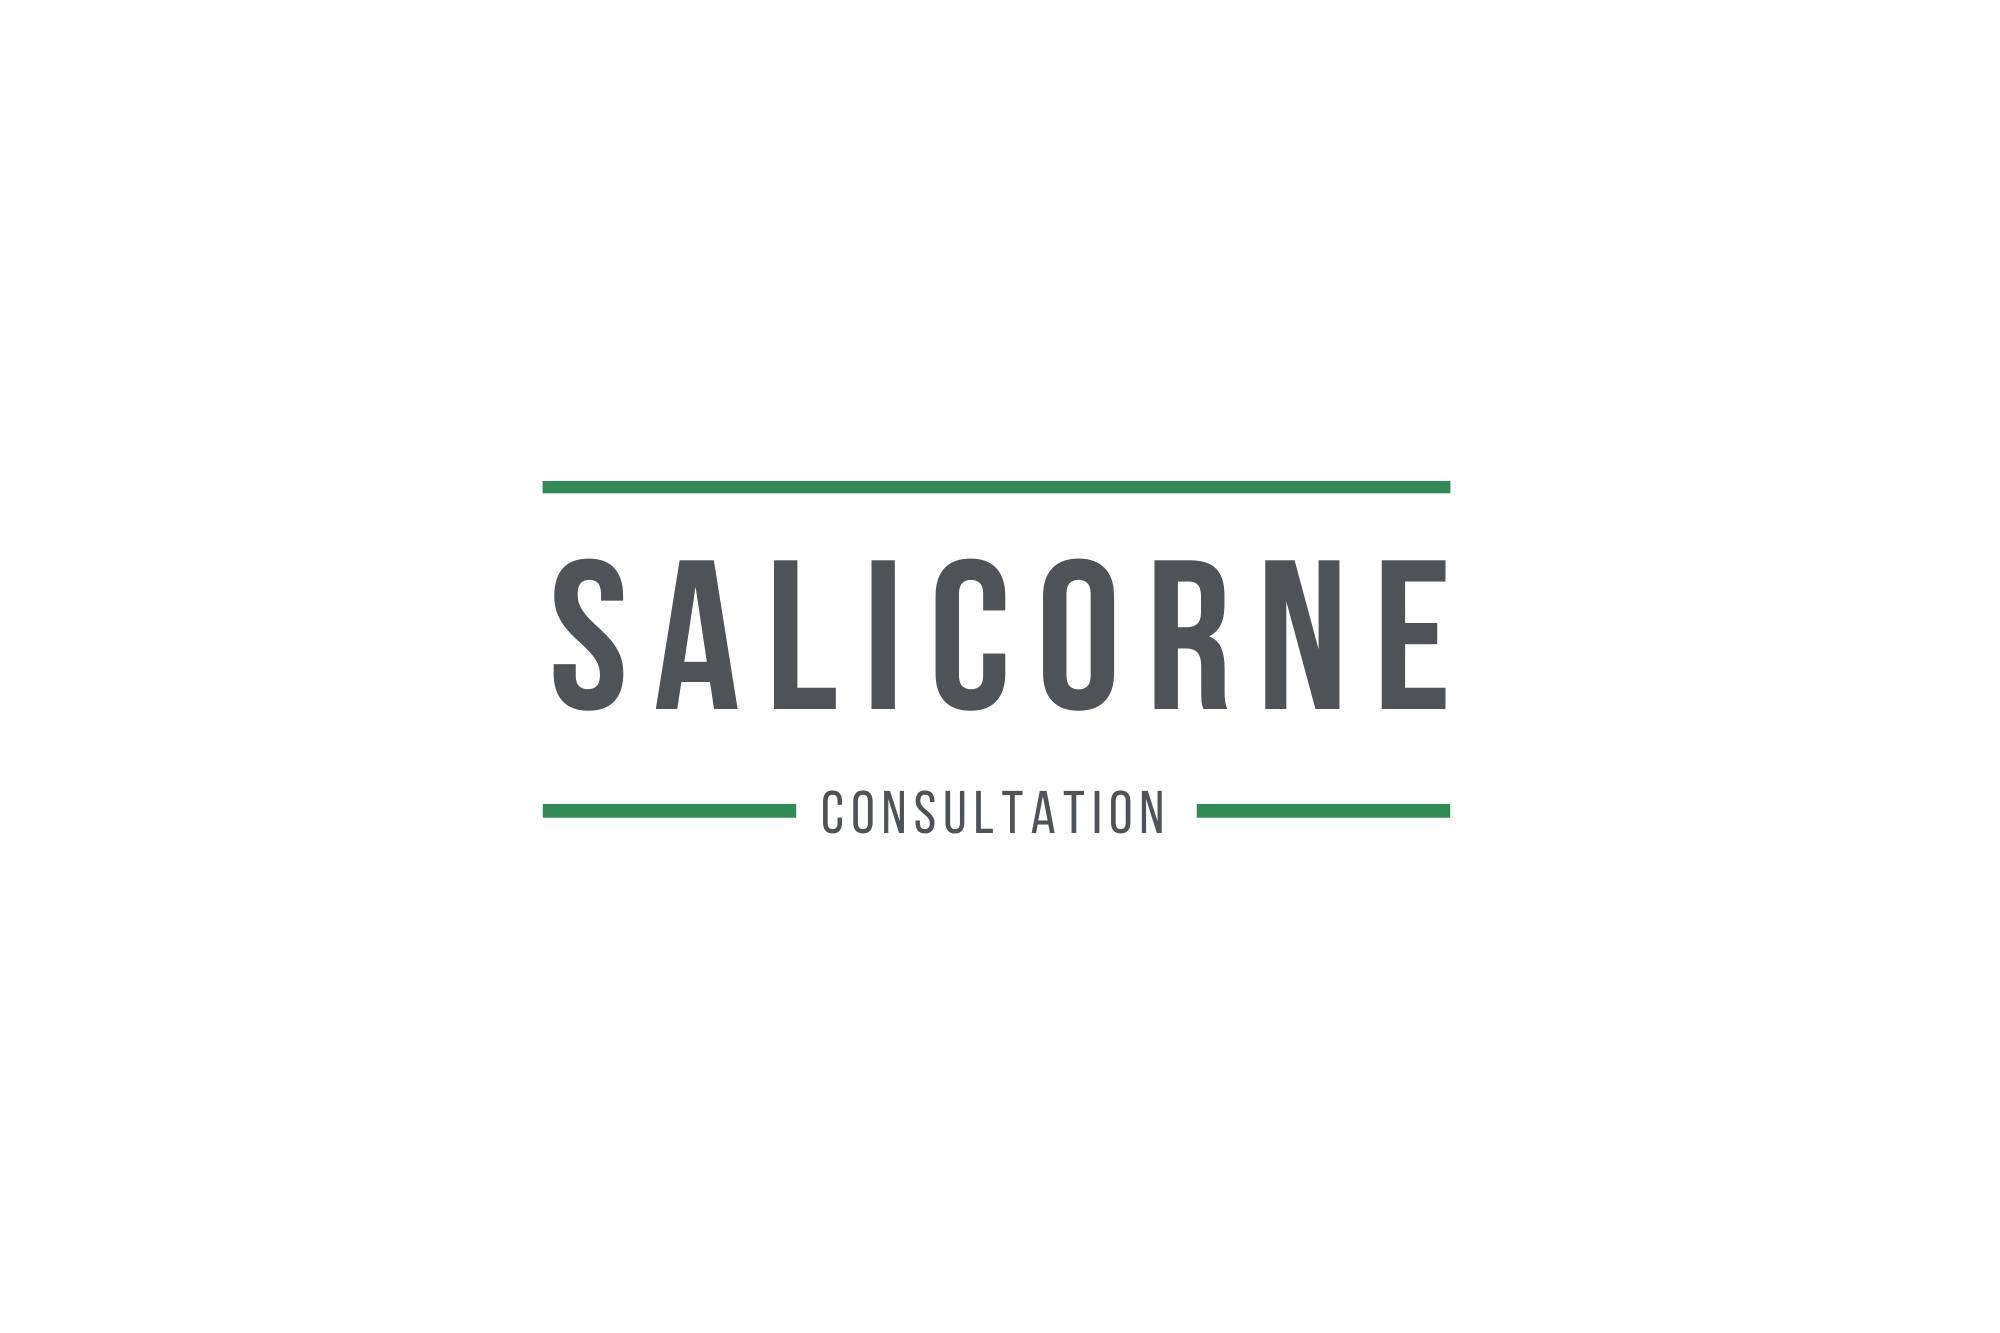 Salicorne Consultation inc.